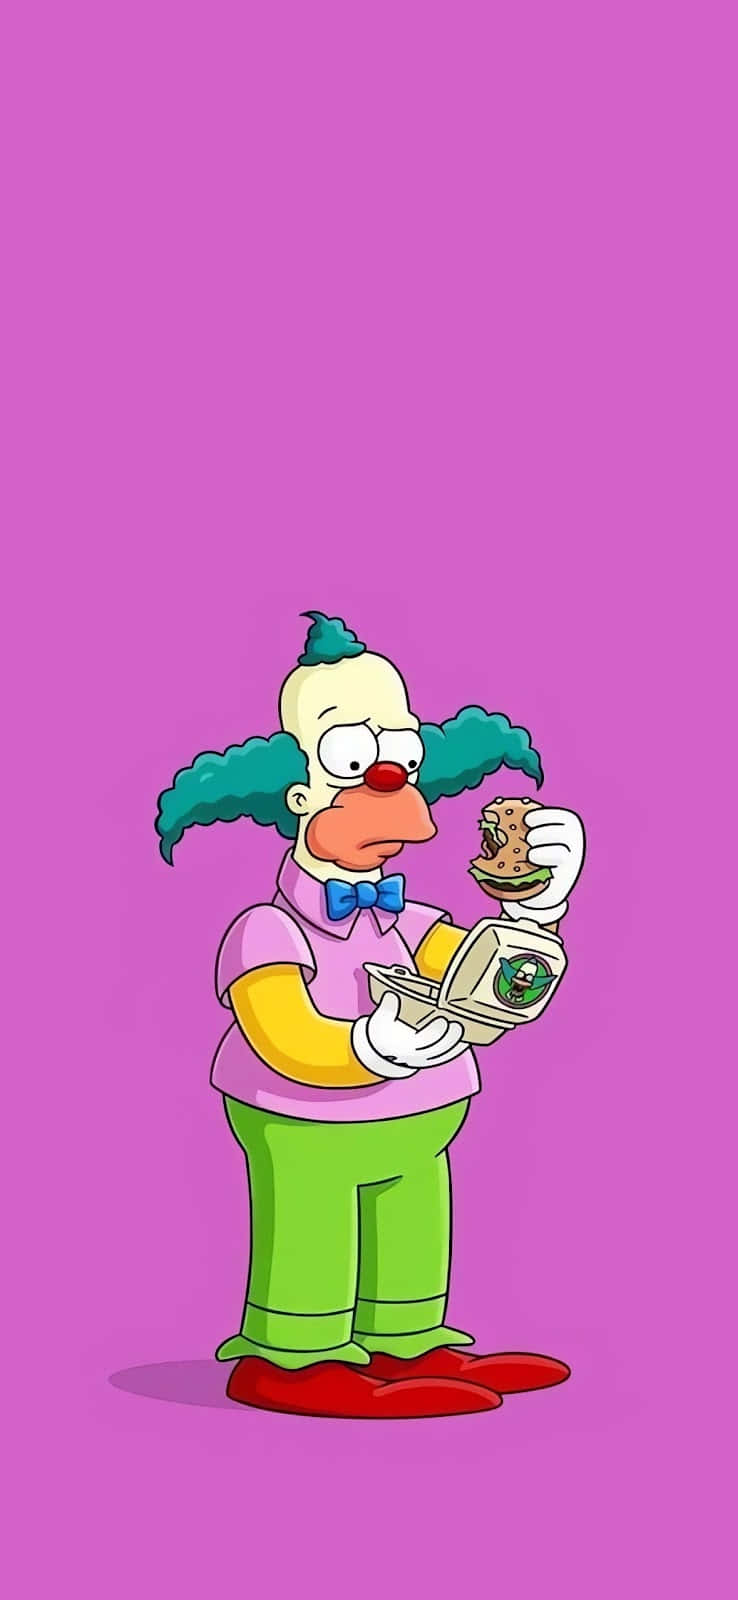 Cartoon Clown With Moneyand Donut.jpg Wallpaper